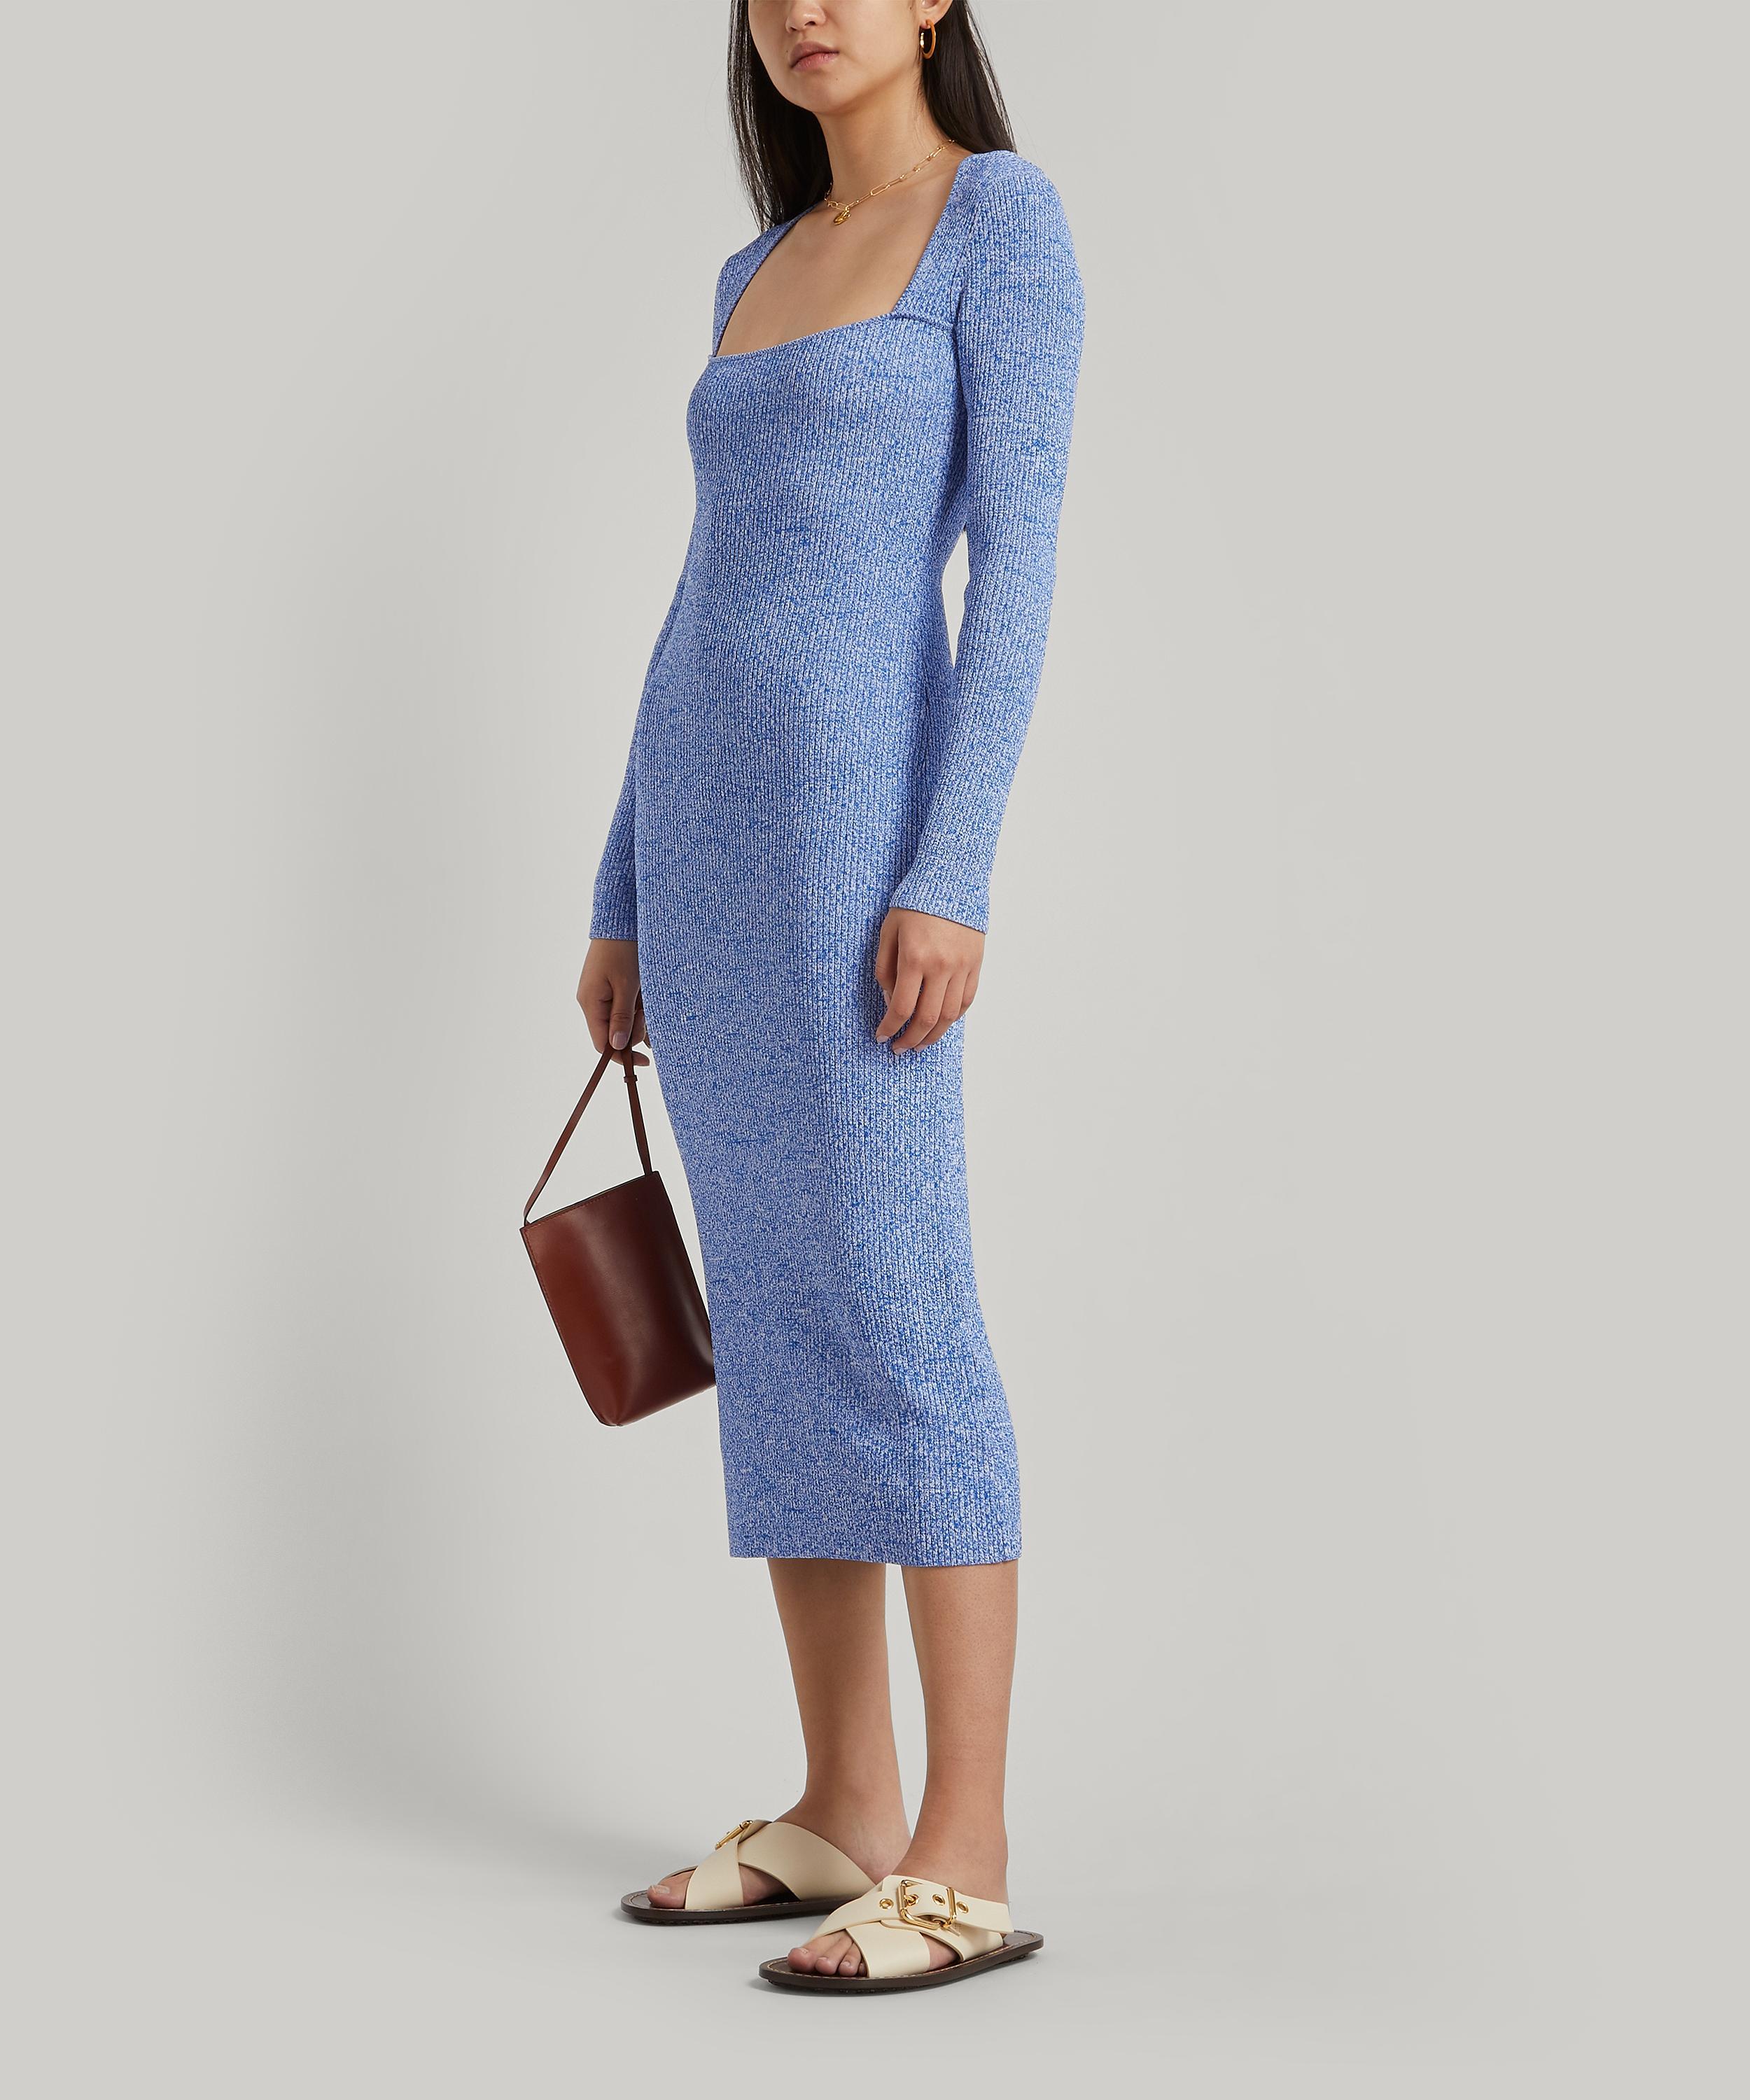 Ganni Long-sleeve Melange Knit Dress in Blue - Lyst